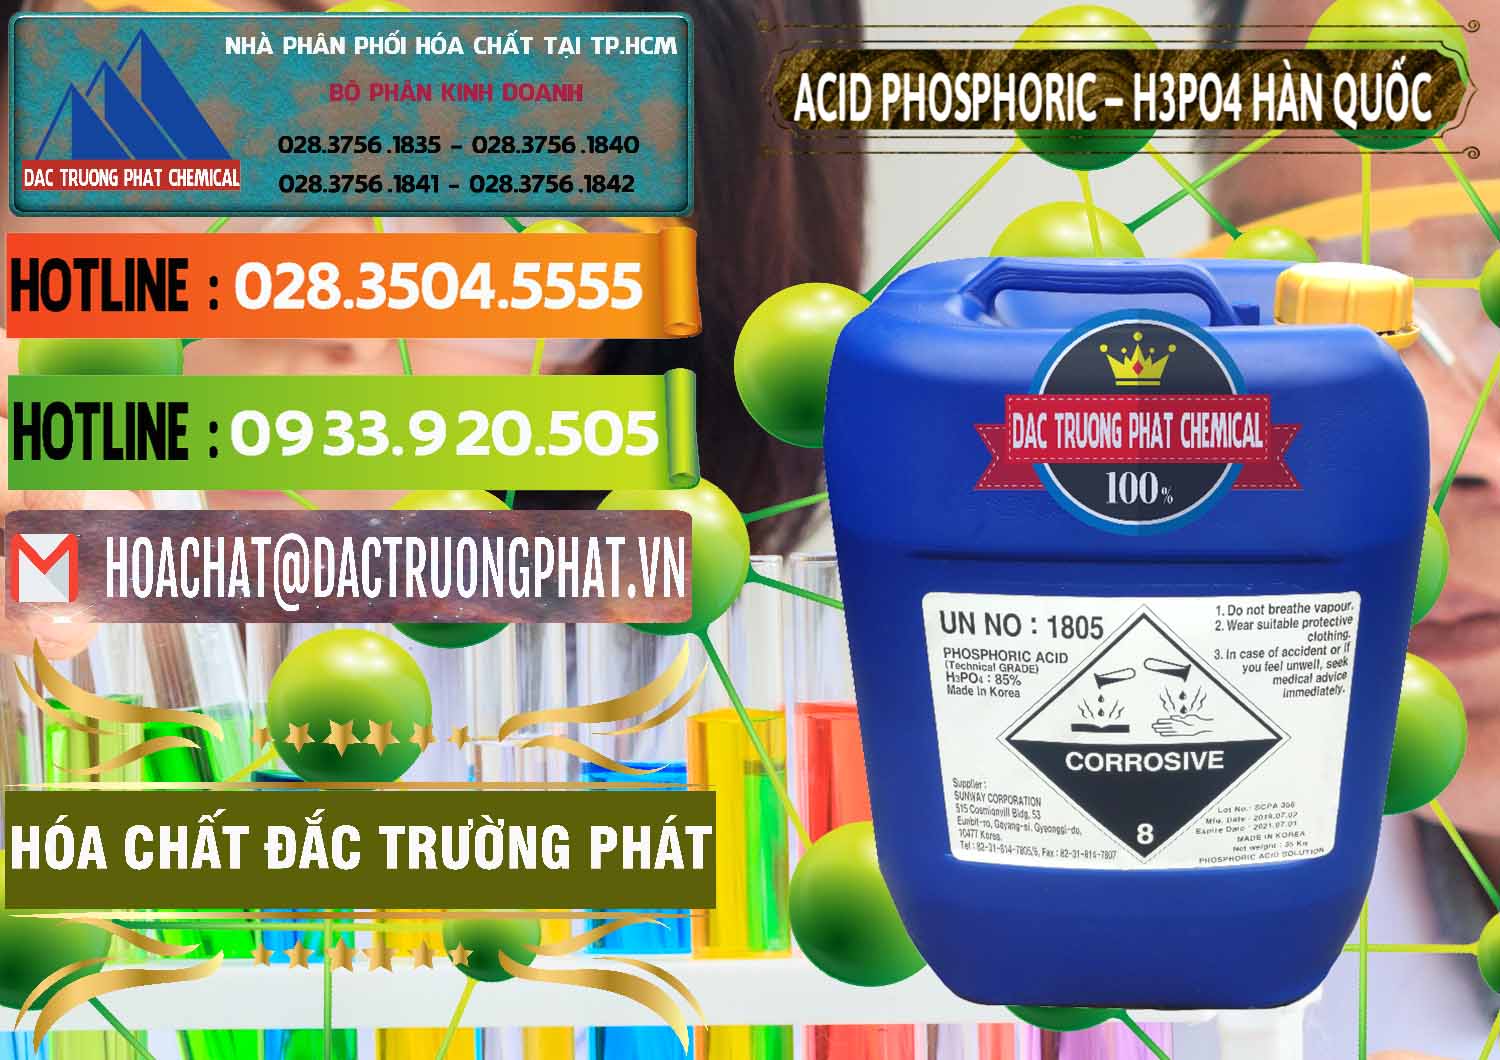 Công ty chuyên phân phối & bán Acid Phosphoric – H3PO4 85% Can Xanh Hàn Quốc Korea - 0016 - Nơi cung cấp & phân phối hóa chất tại TP.HCM - cungcaphoachat.com.vn